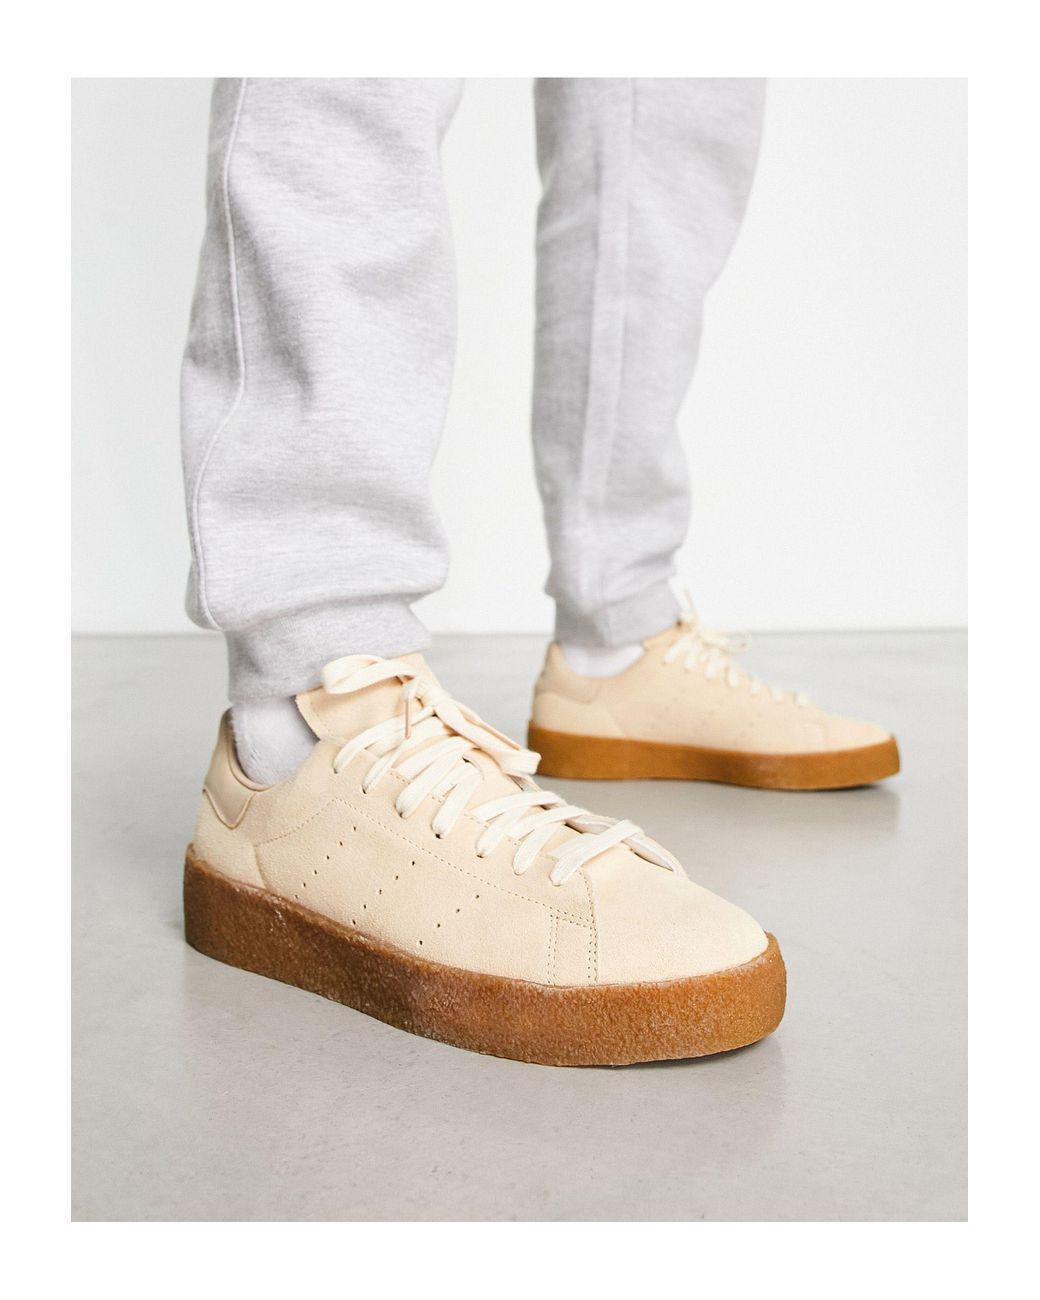 adidas Originals – stan smith crepe – sneaker in Weiß | Lyst DE